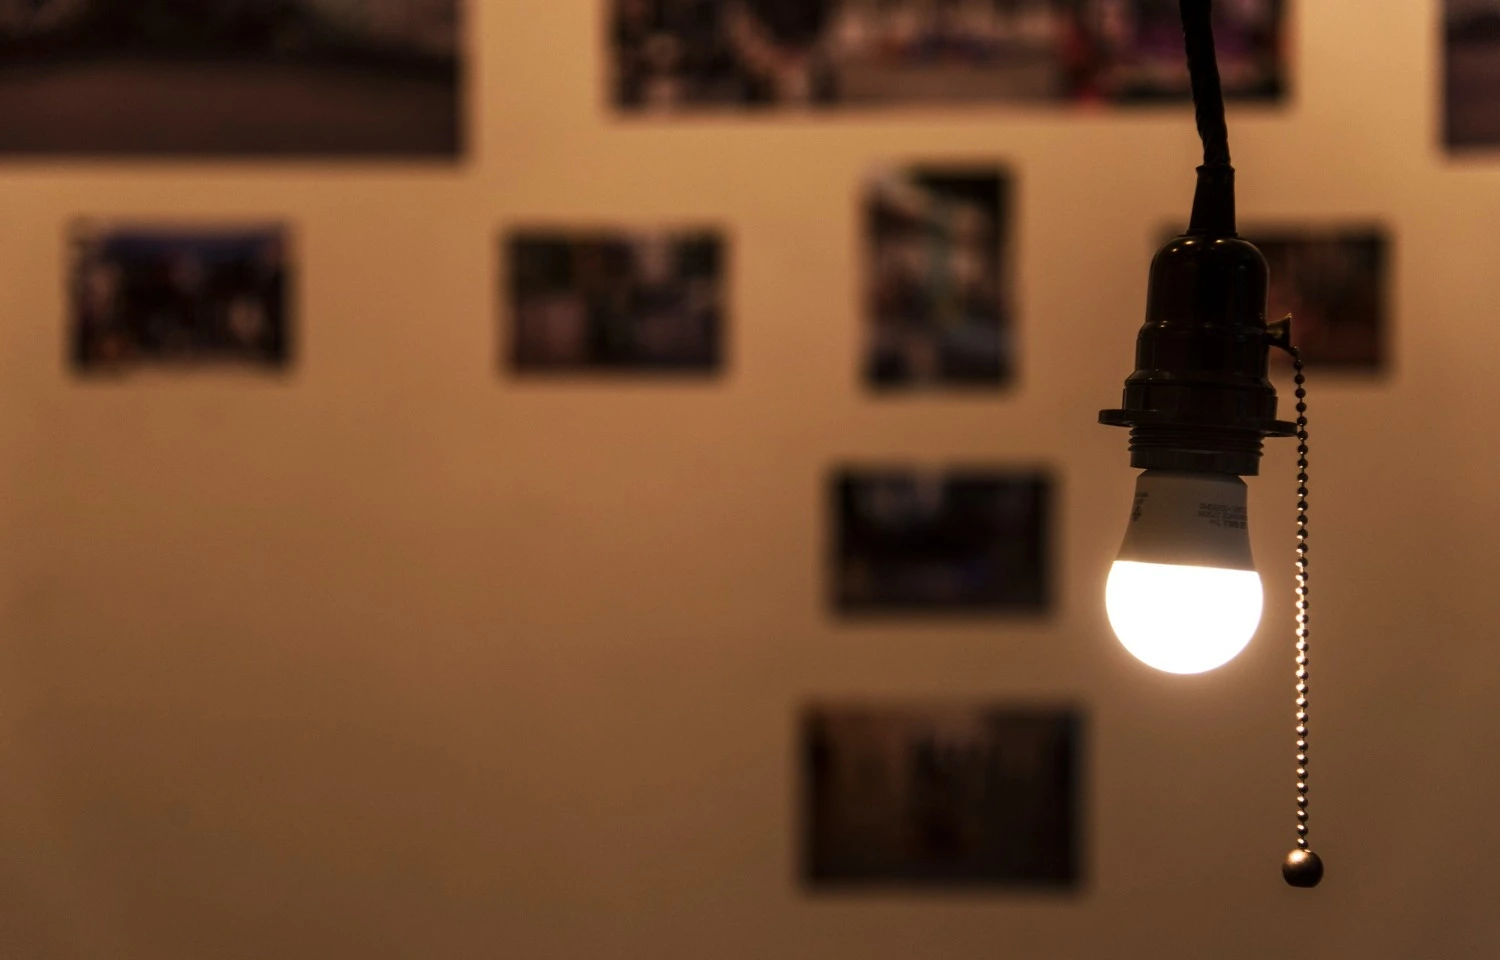 Một bóng đèn treo trên dây chuyền thể hiện công nghệ chiếu sáng PoE trong khung cảnh hiện đại